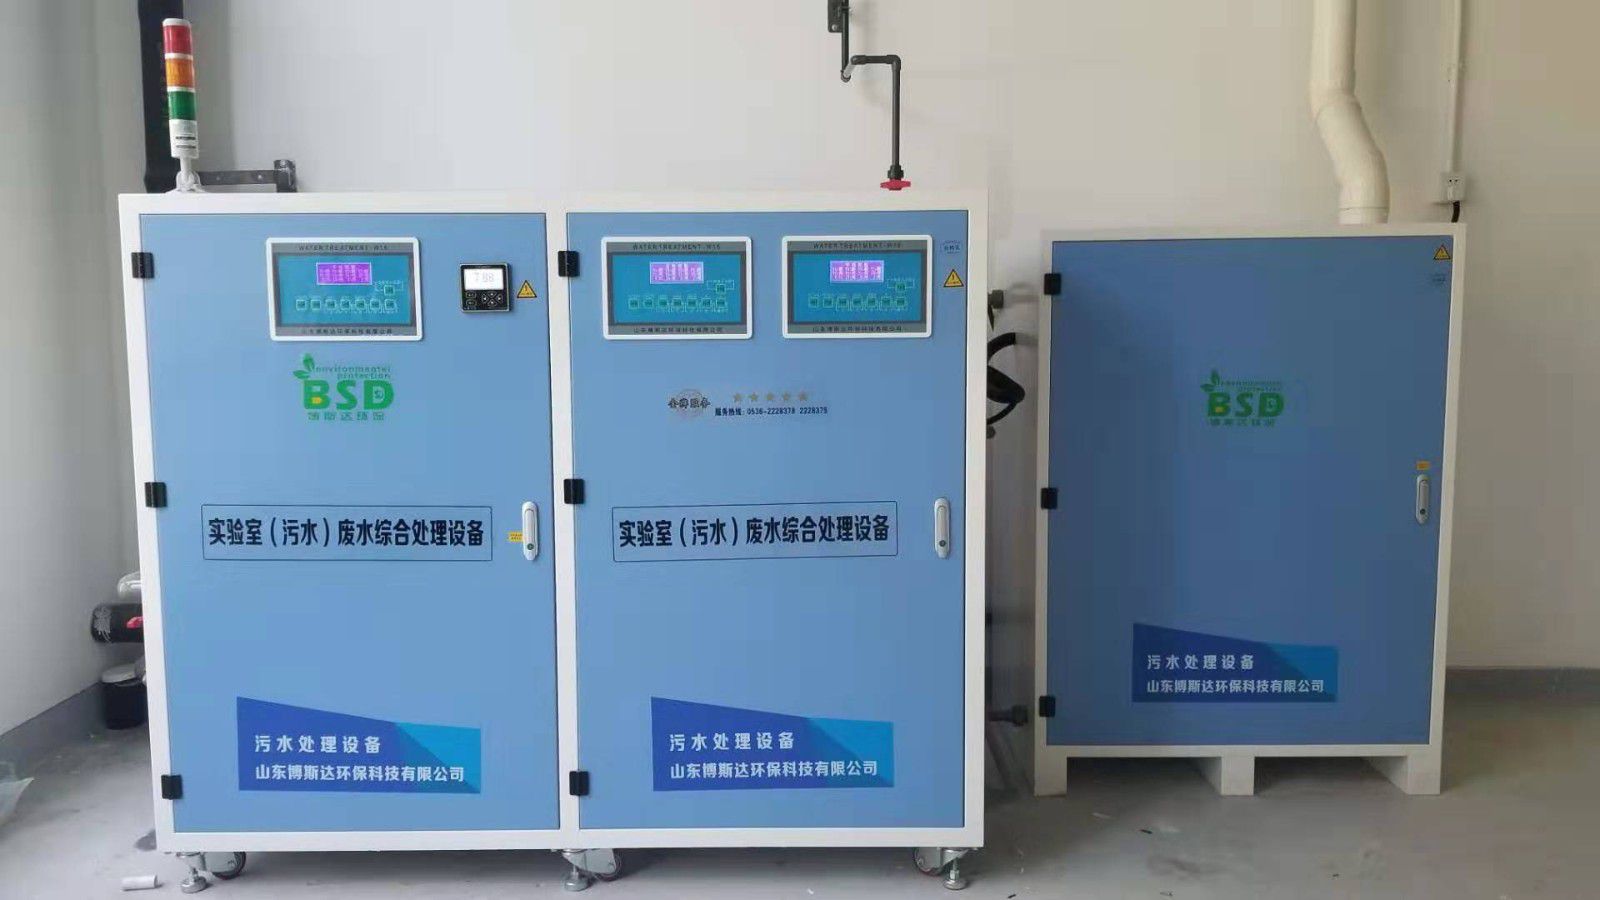 九江彭泽县大学实验室污水处理设备装置